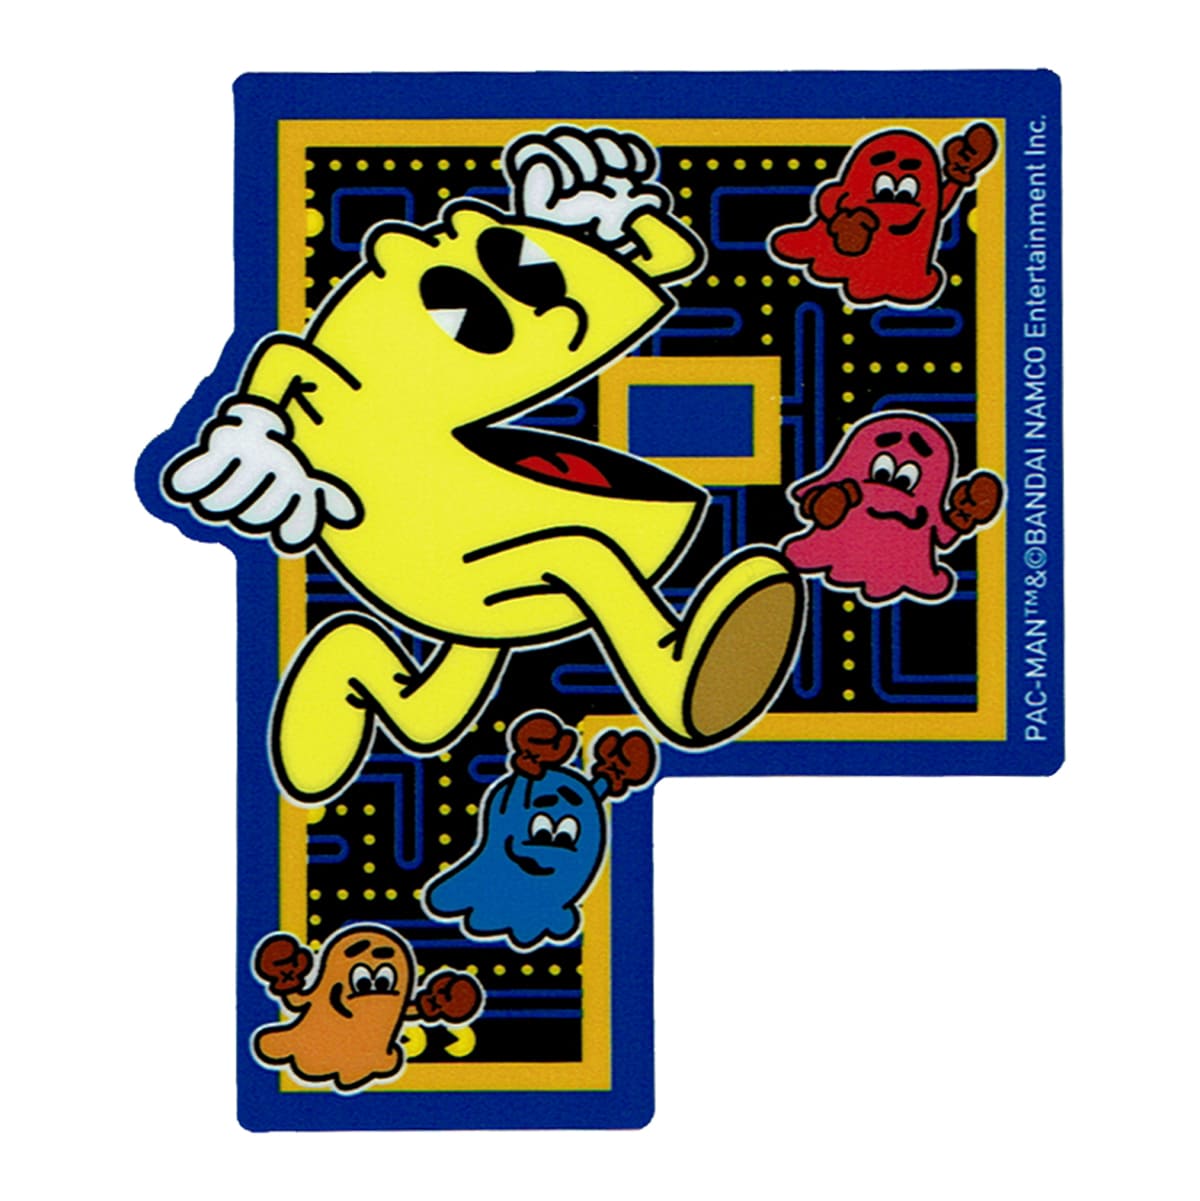 楽天市場 ステッカー シール おしゃれ カワイイ パックマン イエロー レトロ イラスト ダイカット ゲーム キャラクター Pac Man ライセンス商品 Lcs1066 カスタマイズ オリジナル ワッペン通販 ワッペンストア